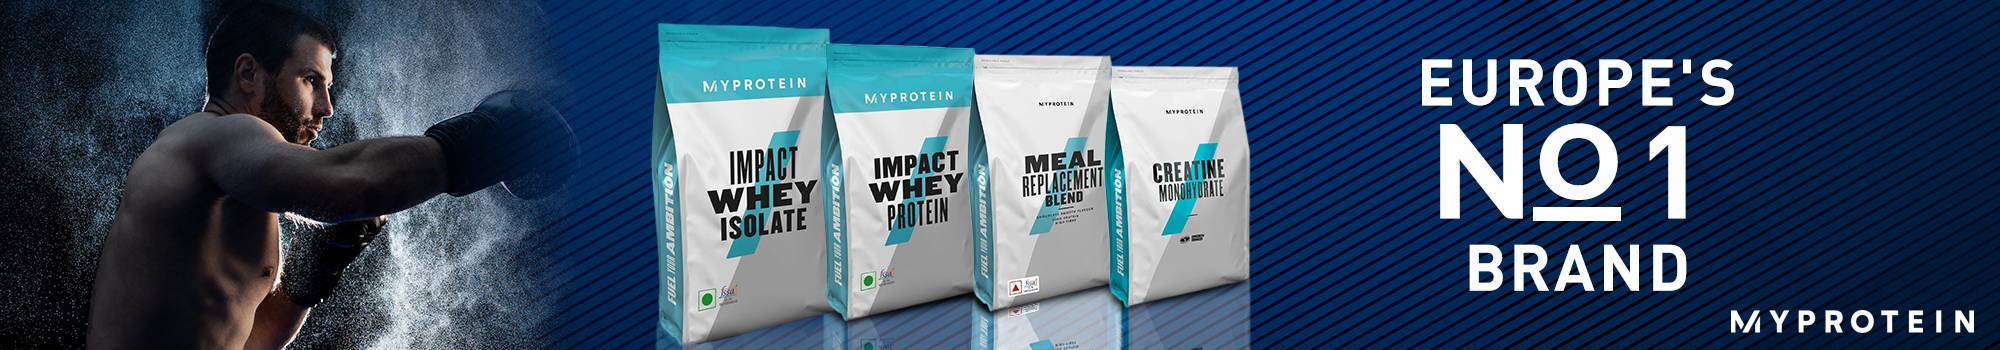 Buy Myprotein Supplements Online